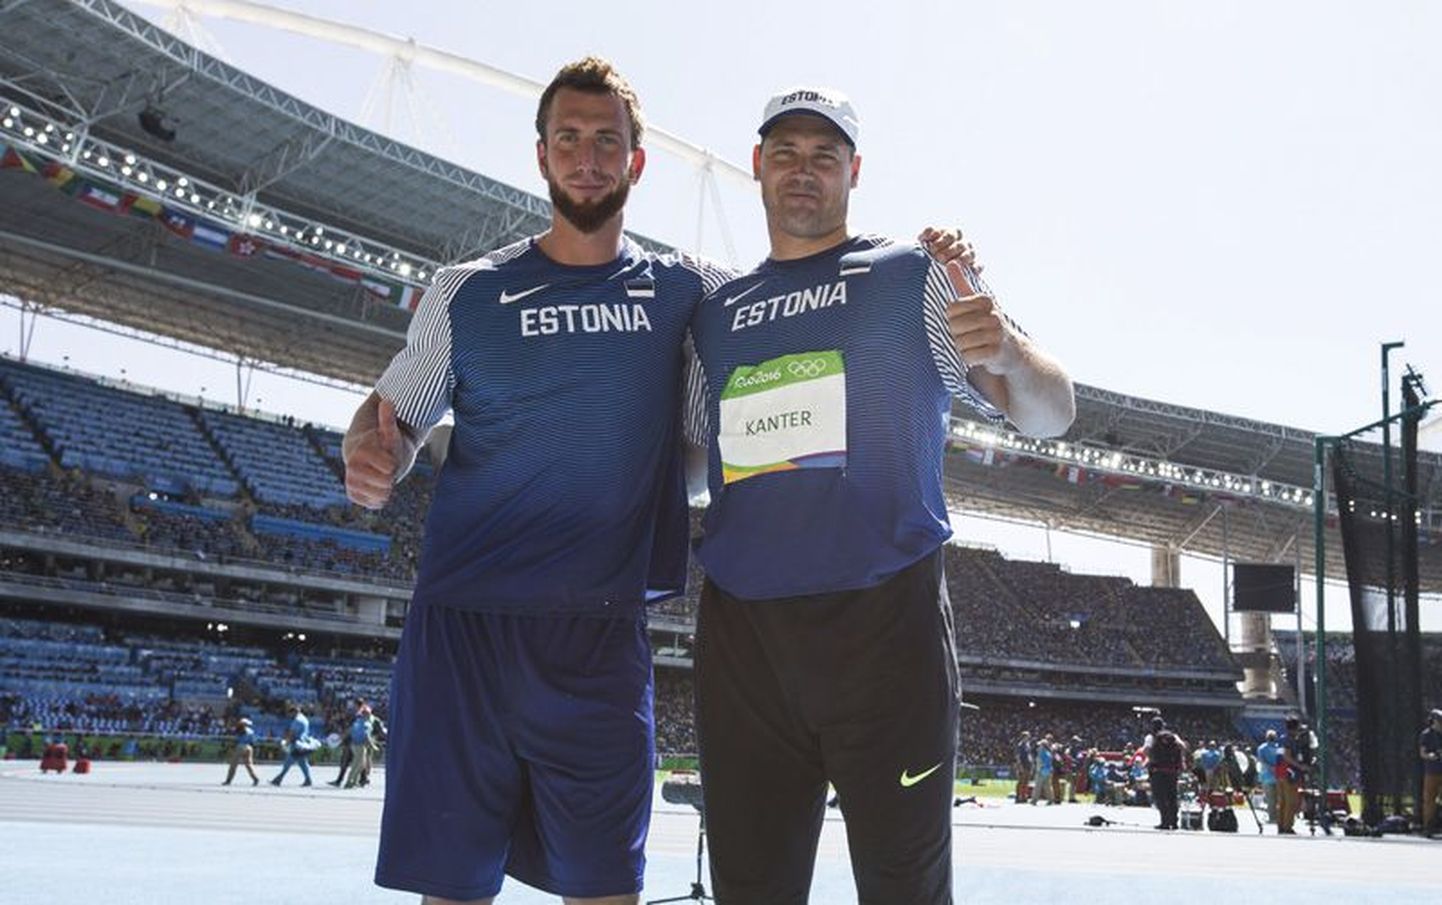 Martin Kupper (vasakult) ja Gerd Kanter Rio olümpiamängudel.